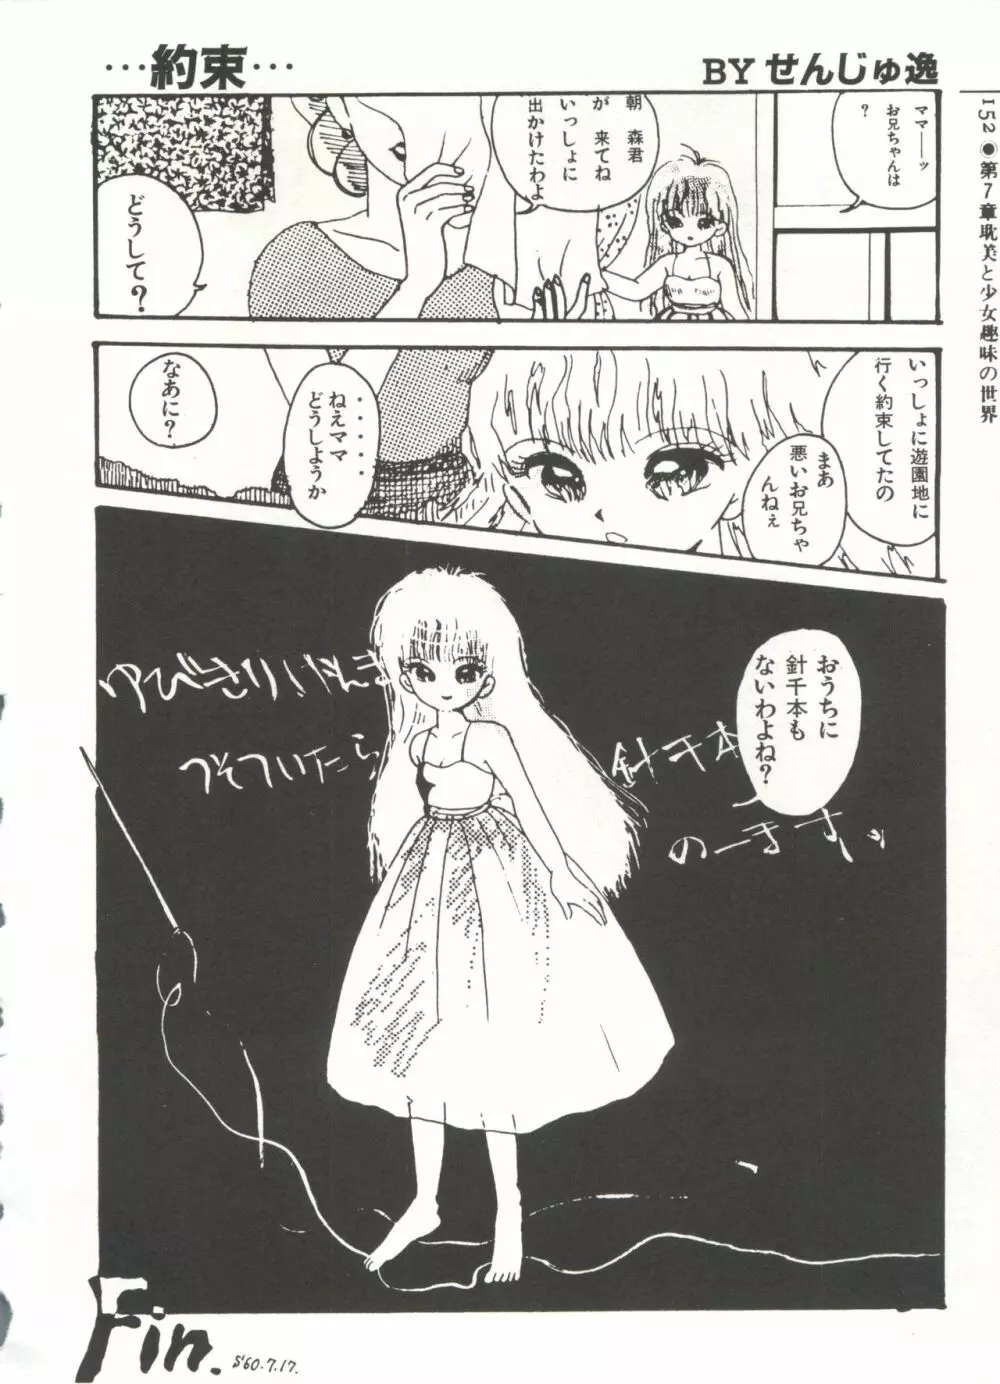 [Anthology] 美少女症候群(2) Lolita syndrome (よろず) 155ページ